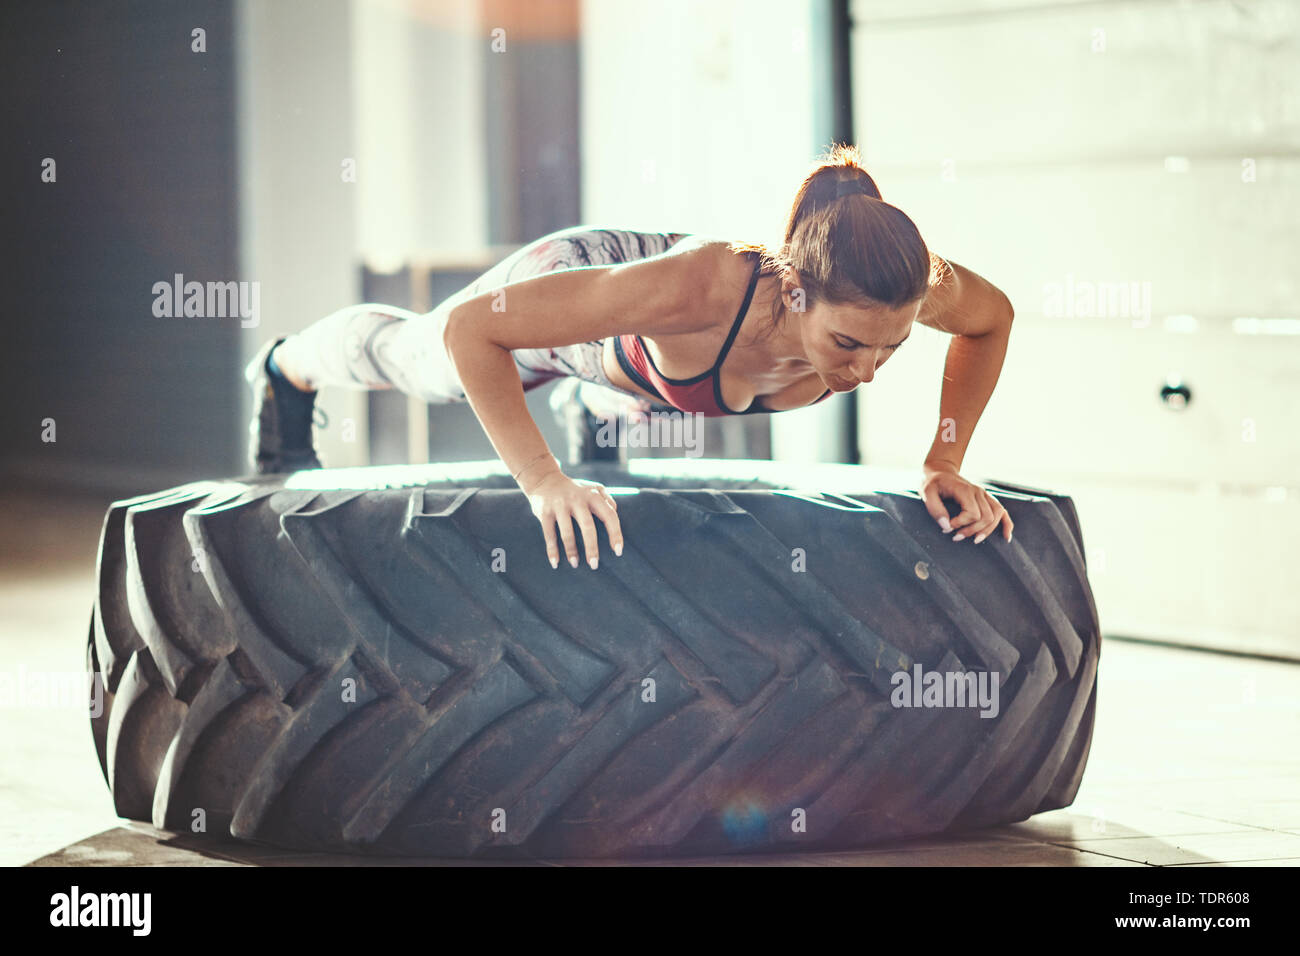 Junge muskulöse Frau tut, Push-up-Übung auf ein Reifen cross fit Training in der Garage. Stockfoto